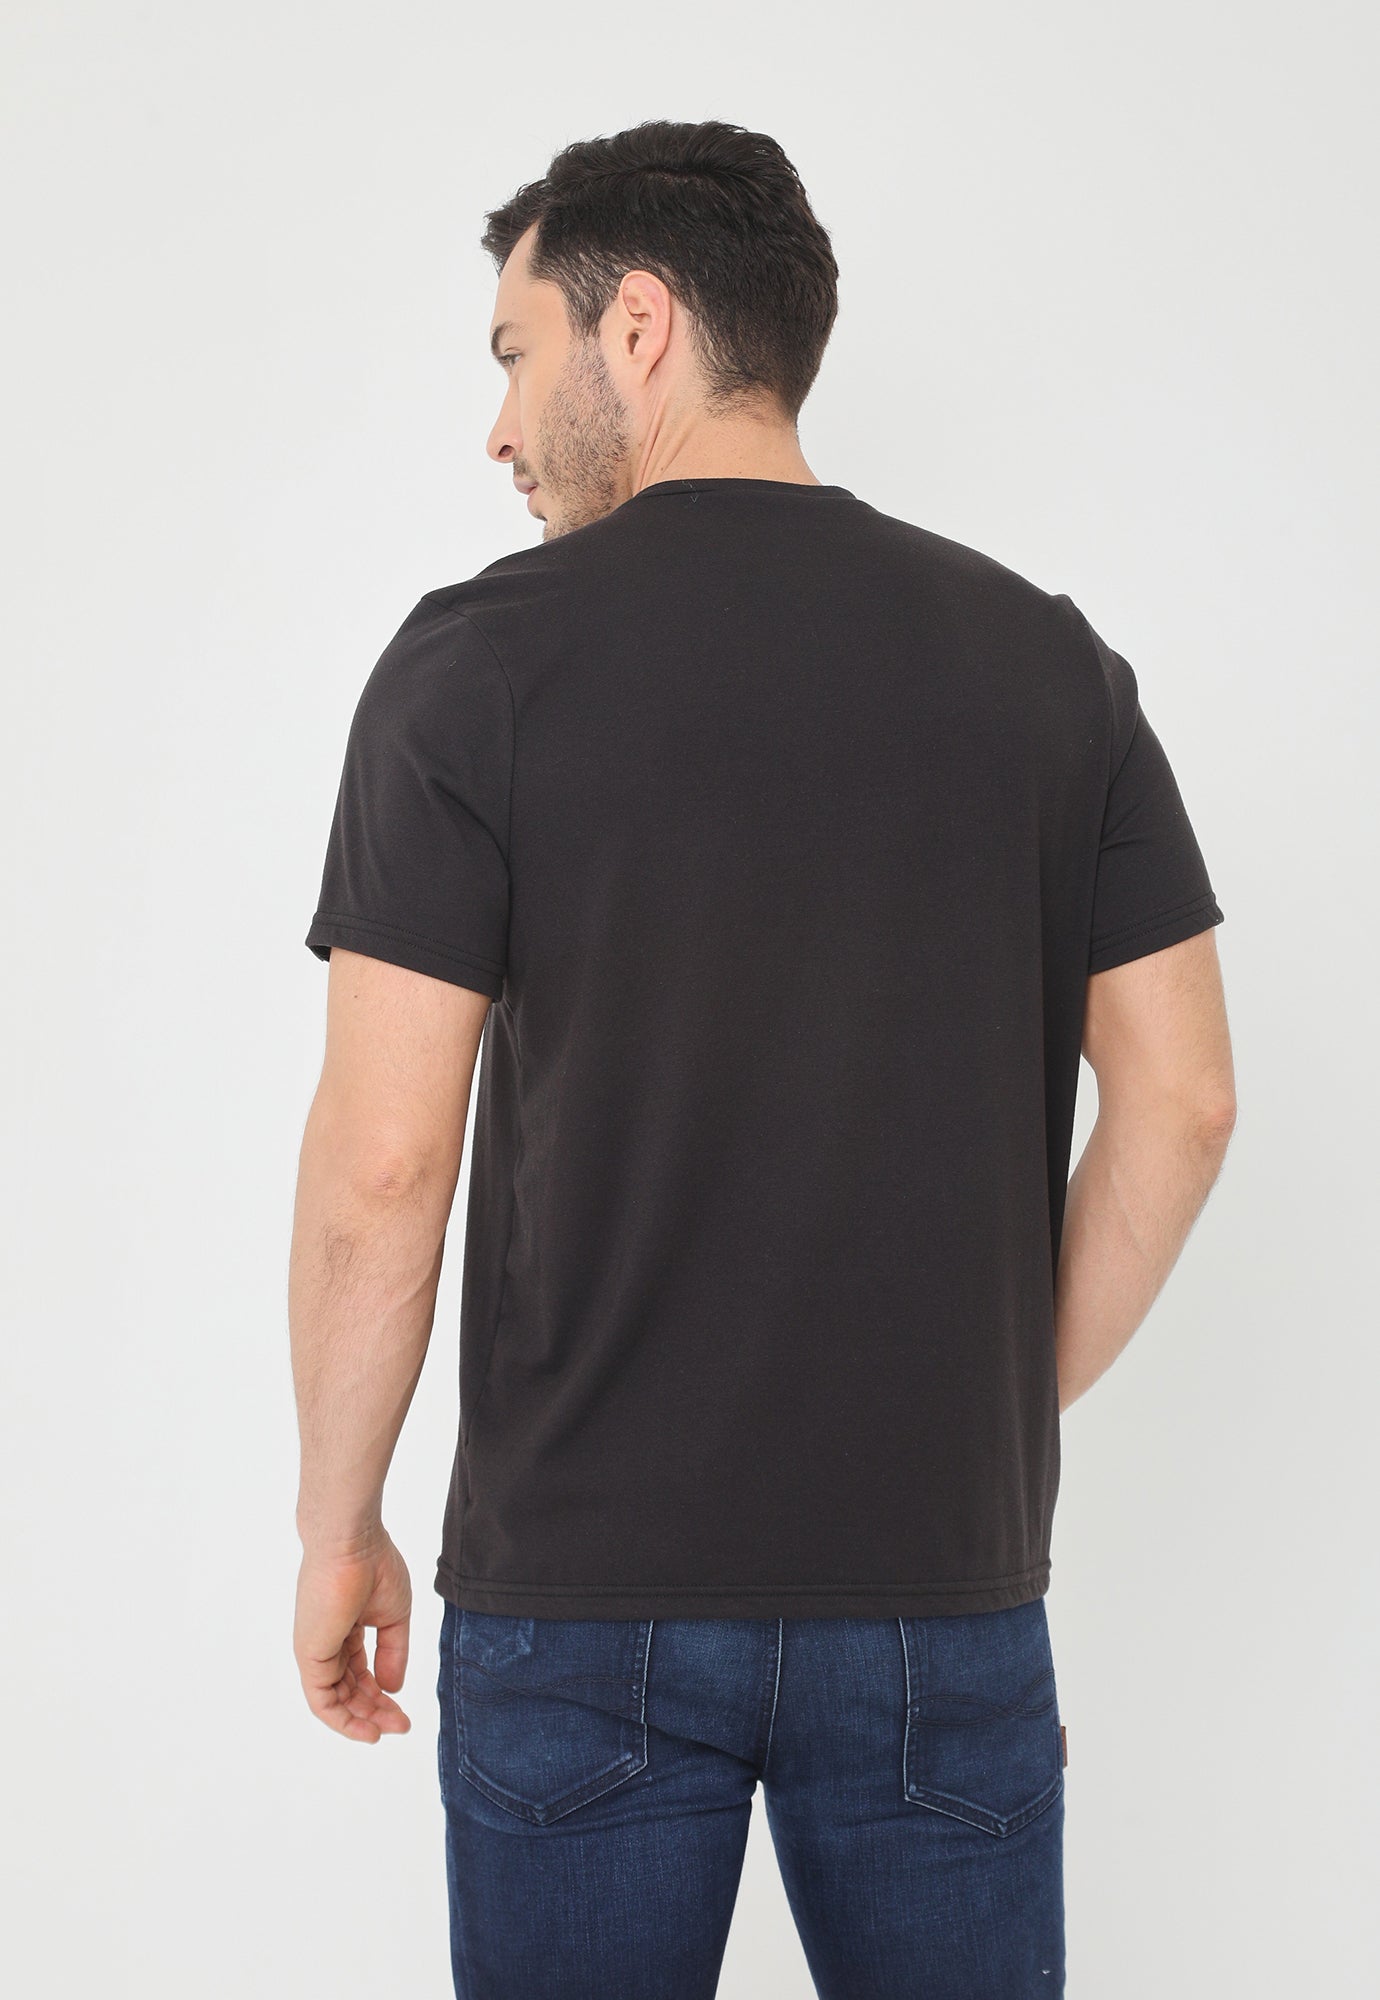 Camiseta negra manga corta, bloque estampado y cuello redondo para hombre